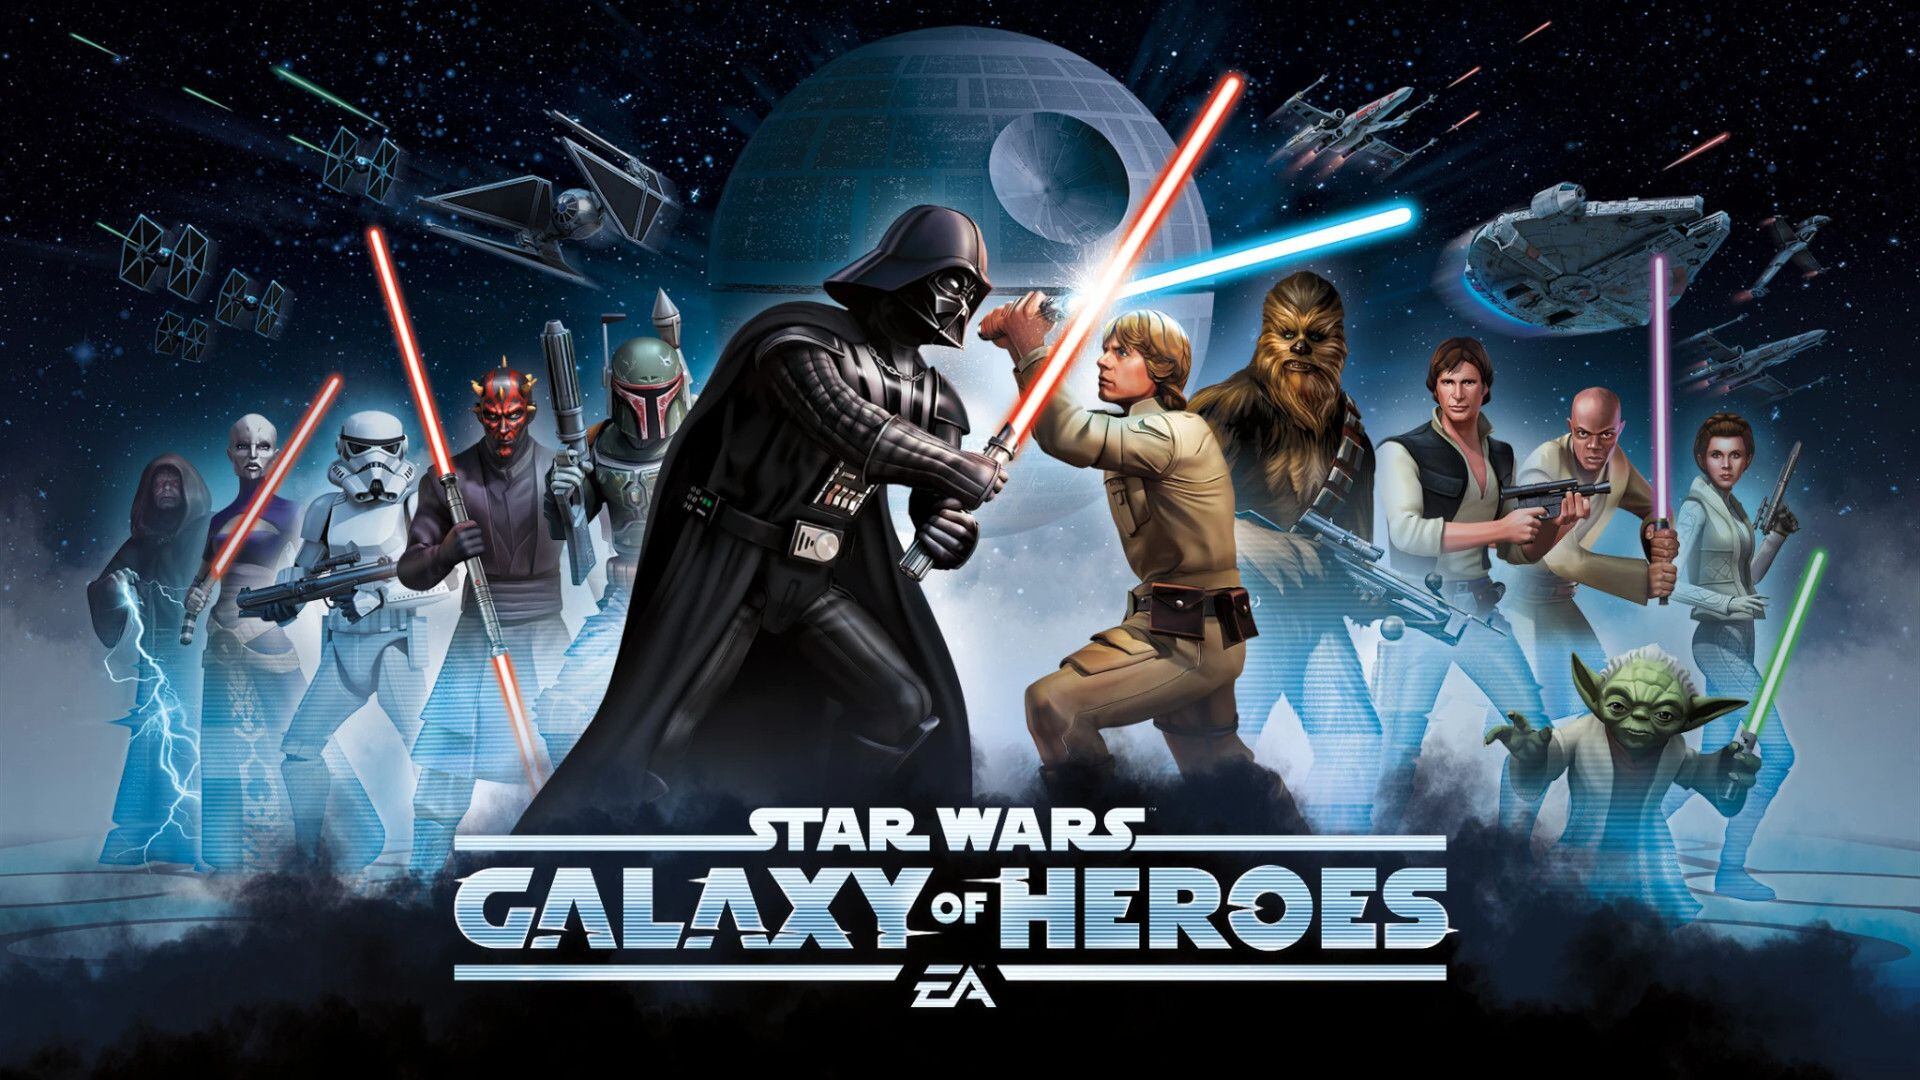 Star Wars Galaxy of Heroes, de EA.